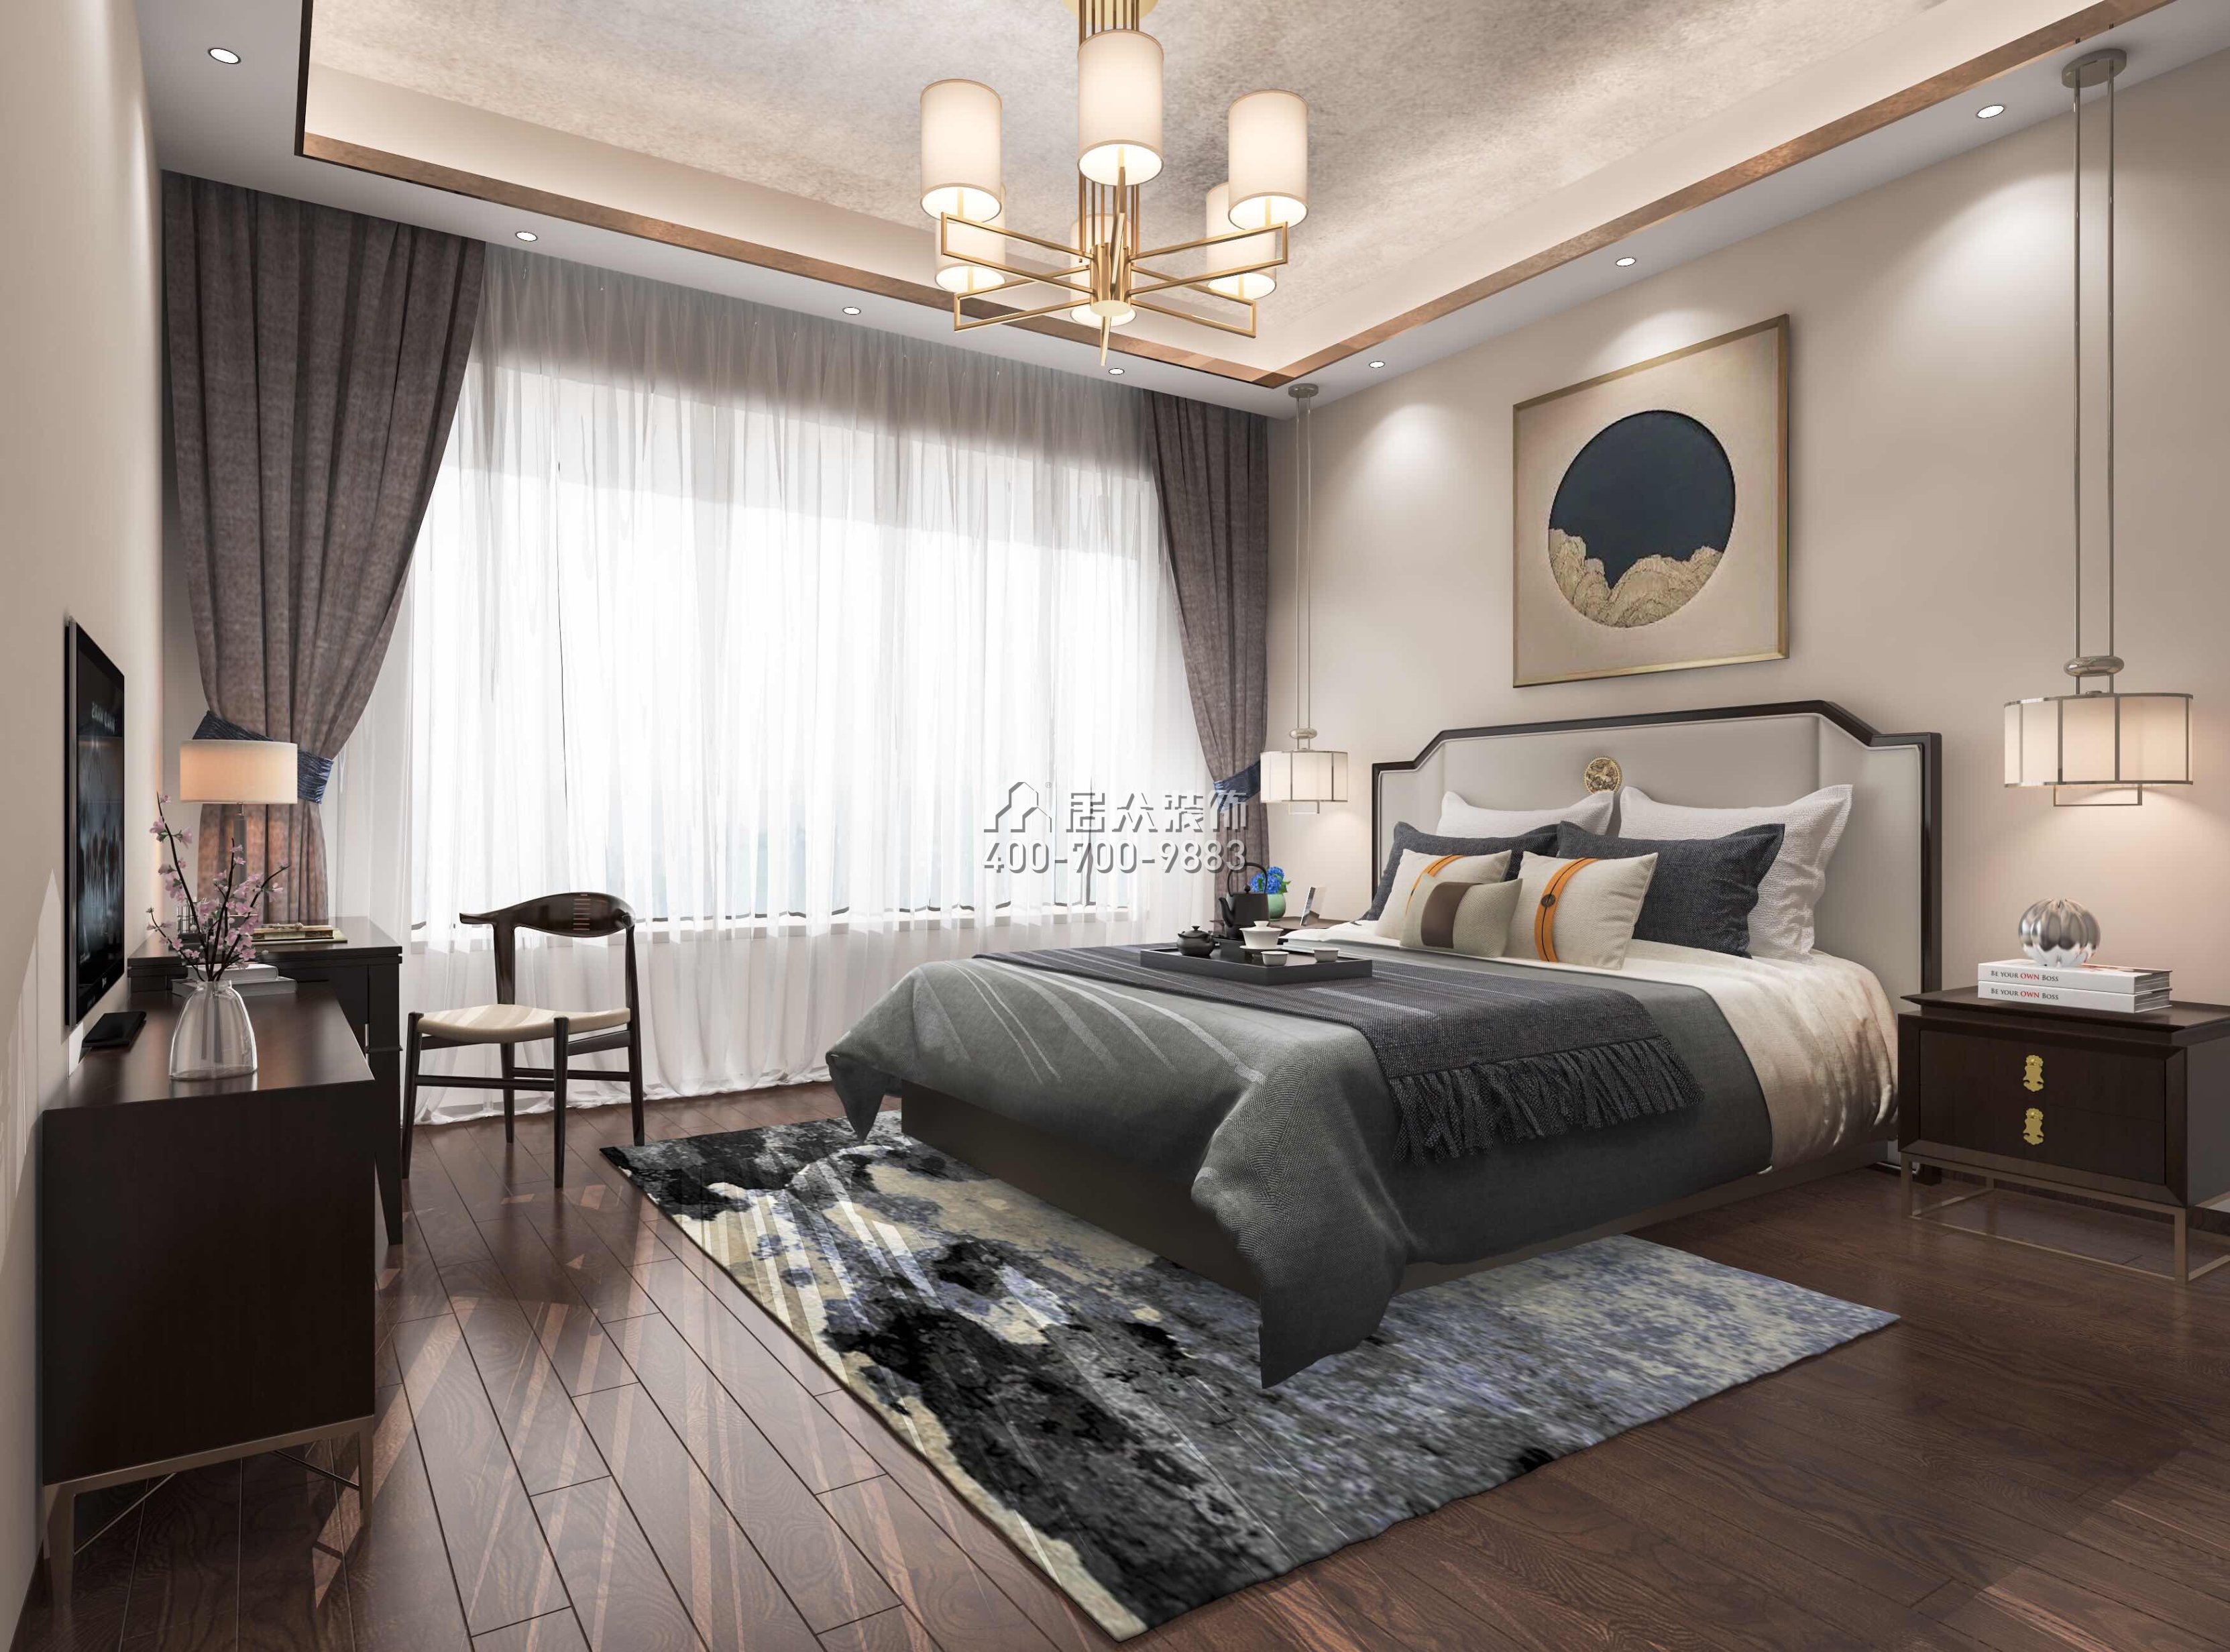 華發新城226平方米中式風格平層戶型臥室裝修效果圖